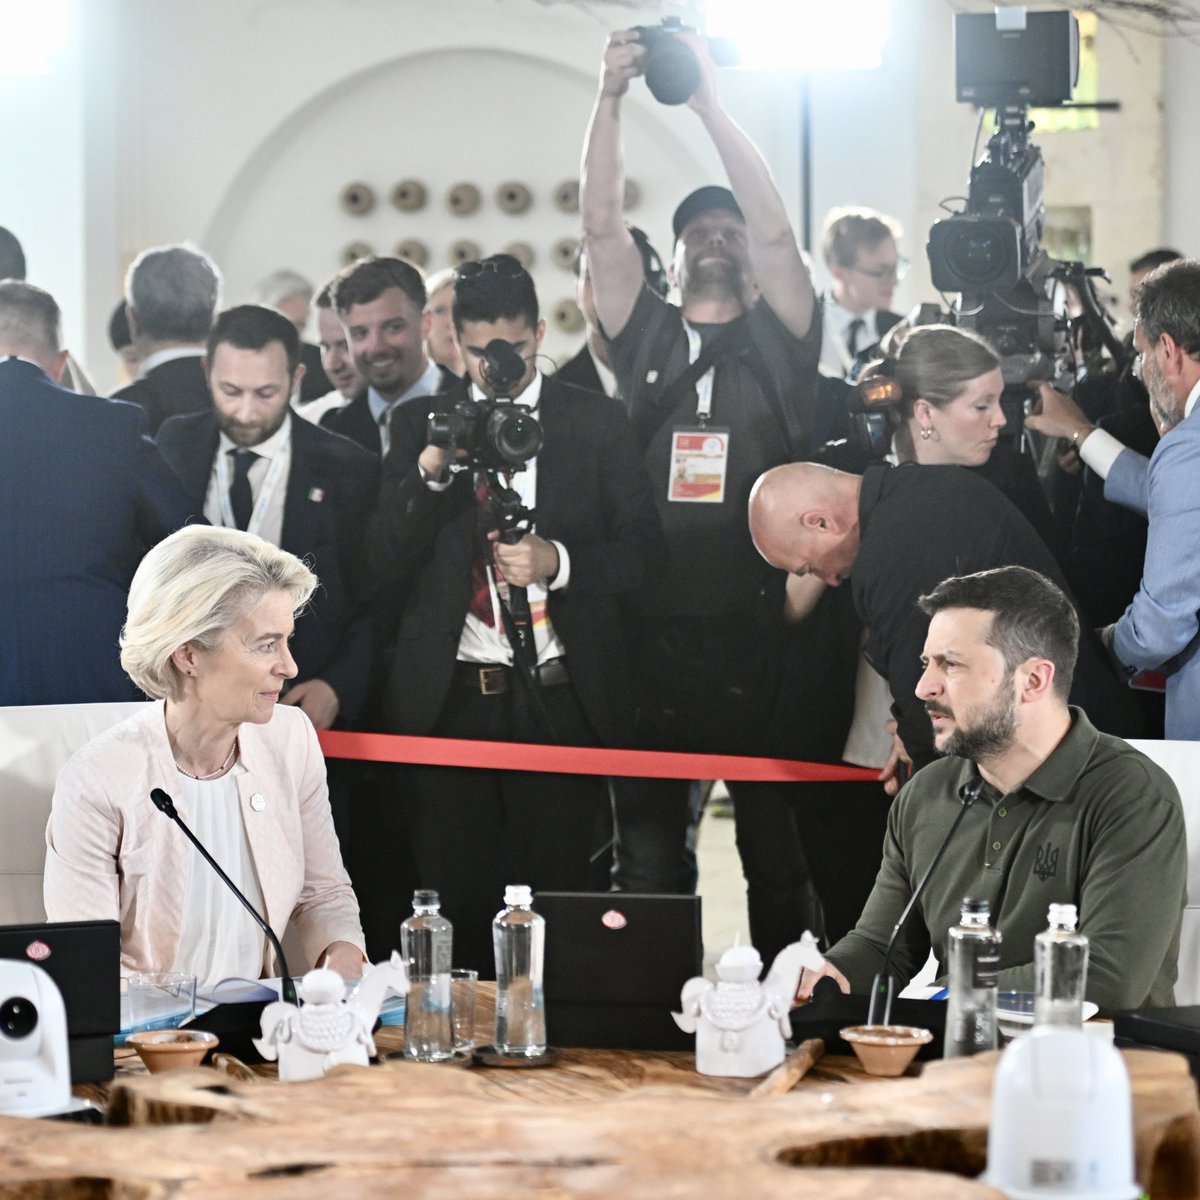 Ursula von der Leyen: Skupina G7 sa dohodla, že do konca roka poskytne Ukrajine pôžičky v hodnote približne 50 miliárd dolárov. Neočakávané zisky z ruských suverénnych aktív použijeme na ich splatenie. Toto stavia na činnosti EÚ, kde tento neočakávaný zisk už smerujeme na obranu a obnovu Ukrajiny